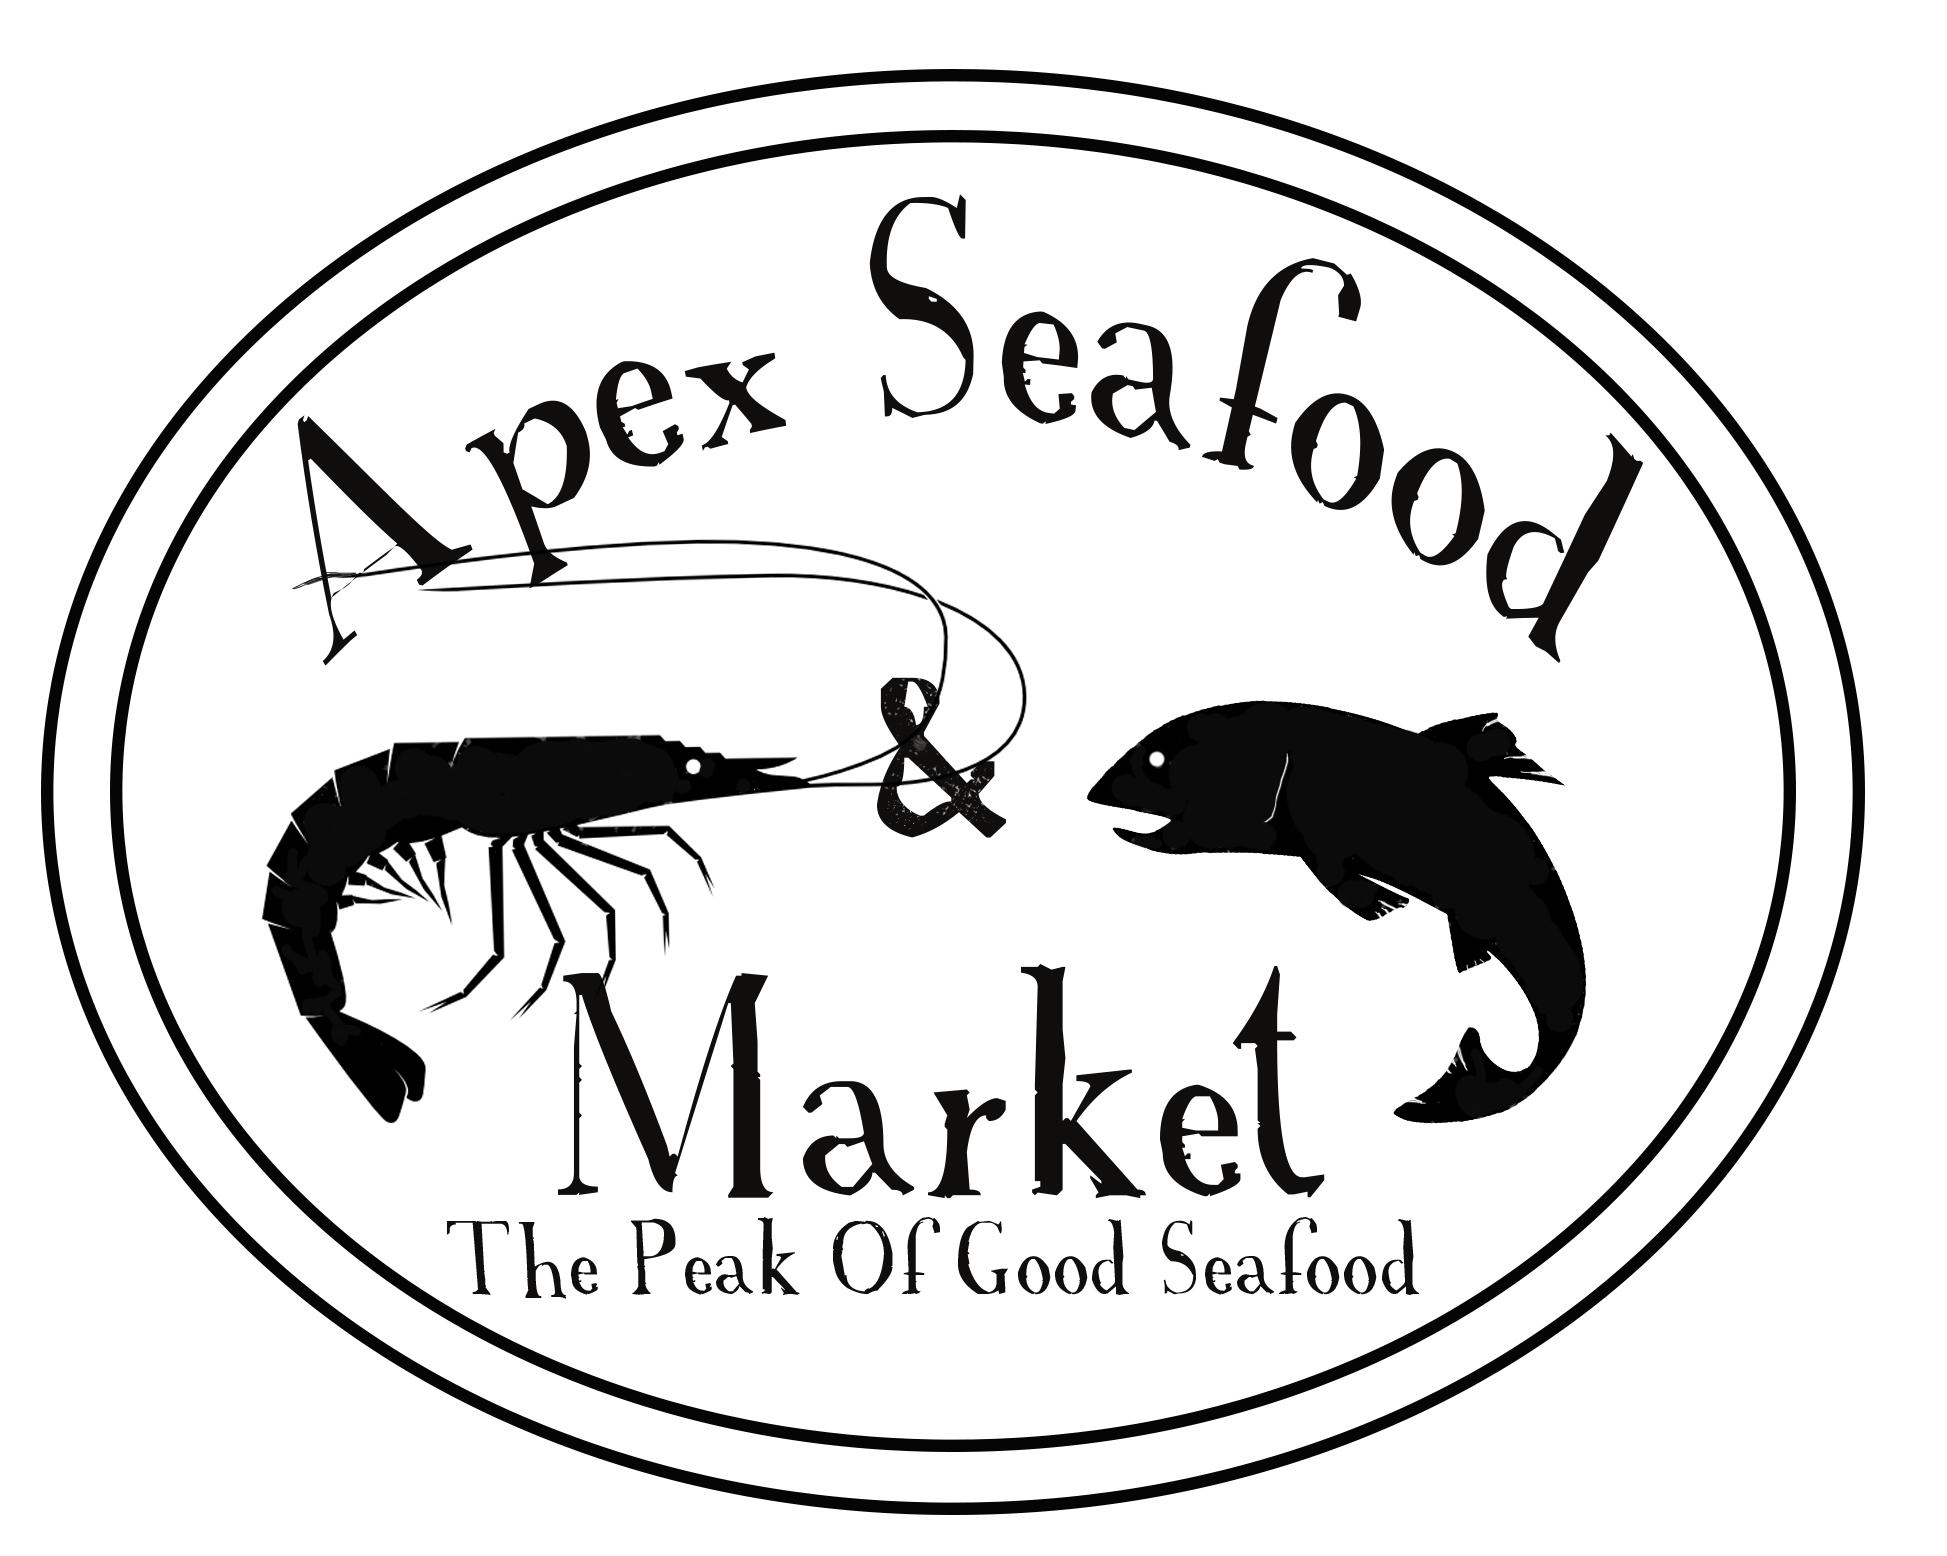 Apex Seafood Market